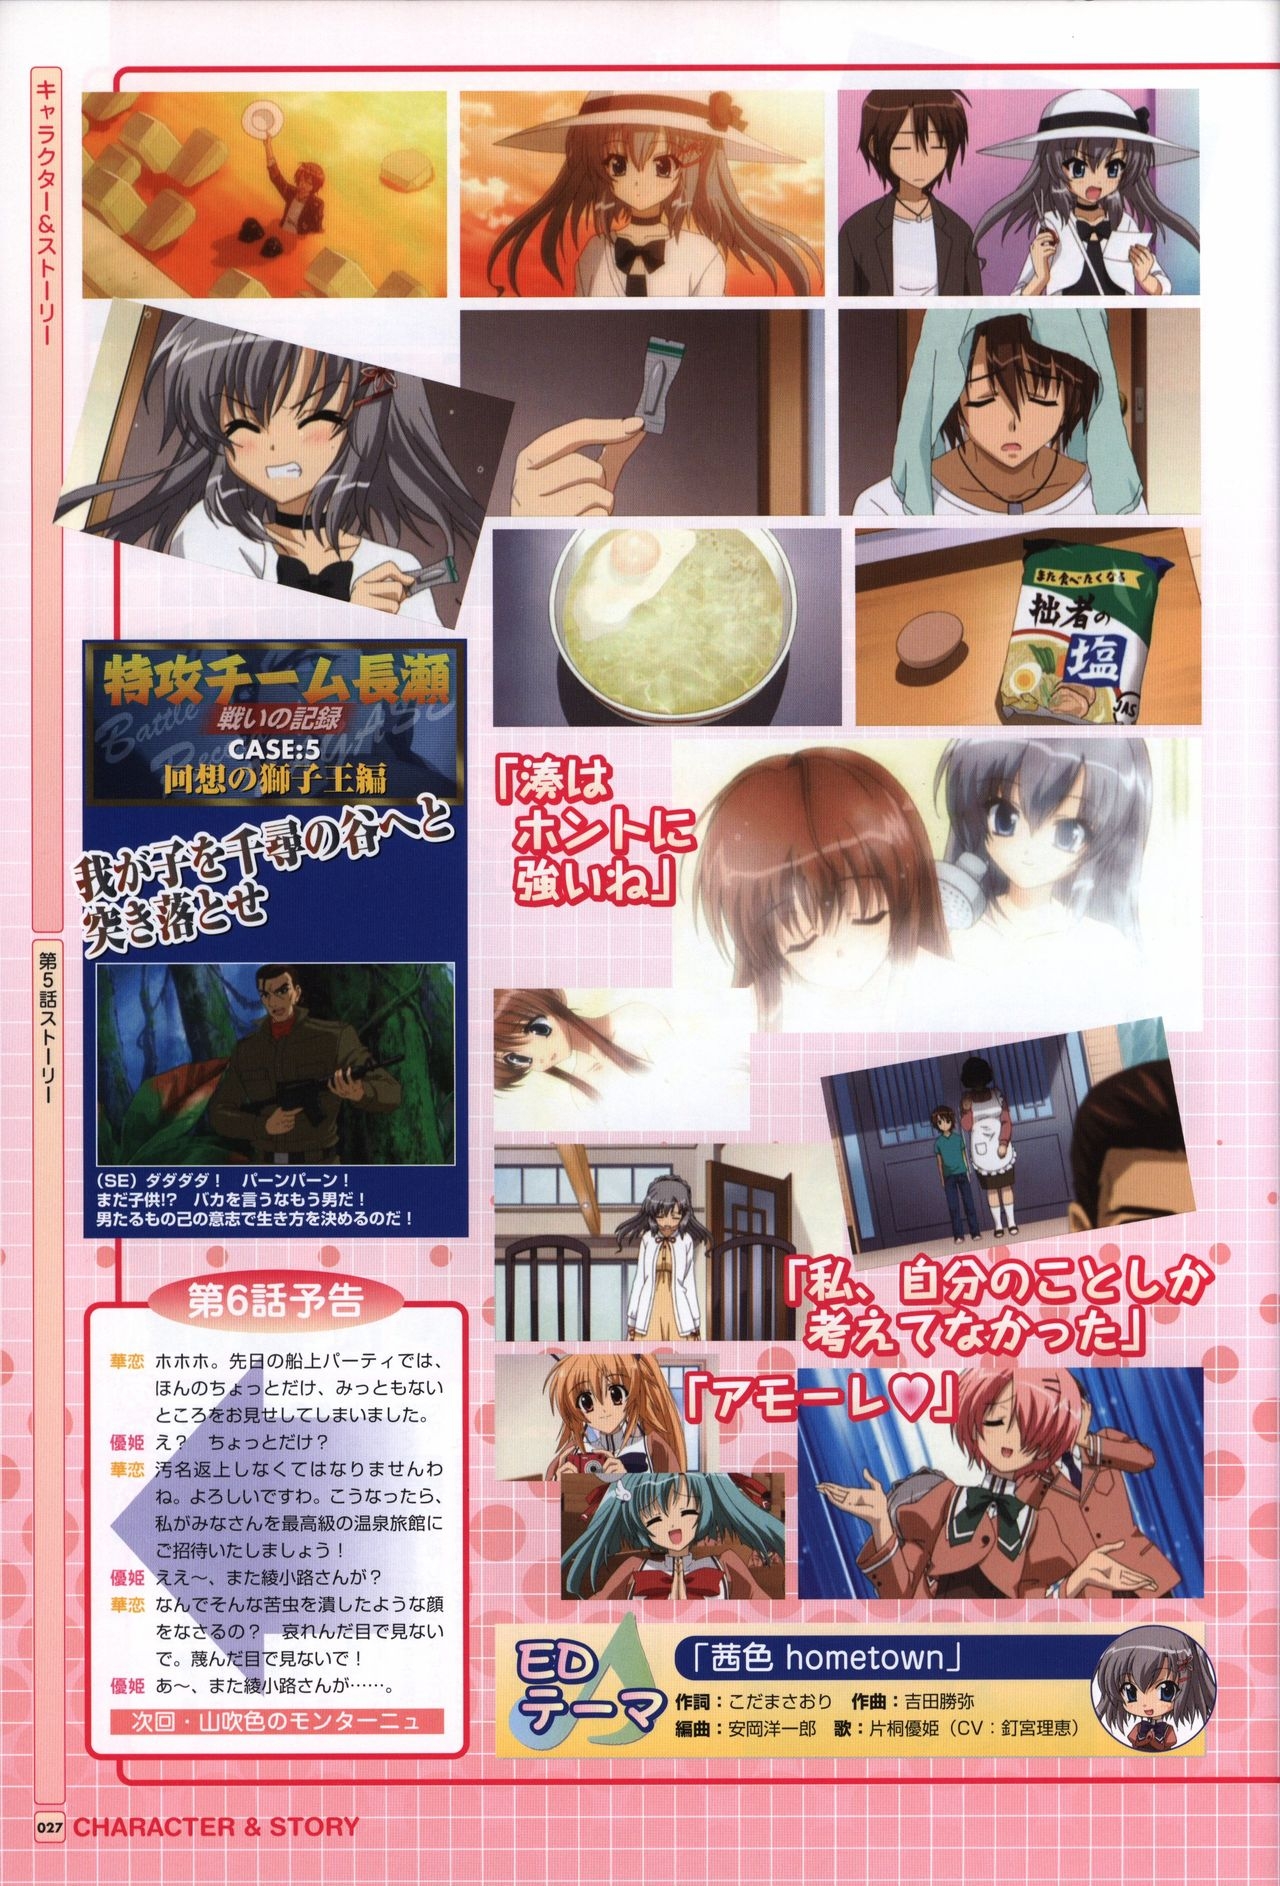 TV ANIME Akaneiro ni Somaru Saka Visual Guide Book 27